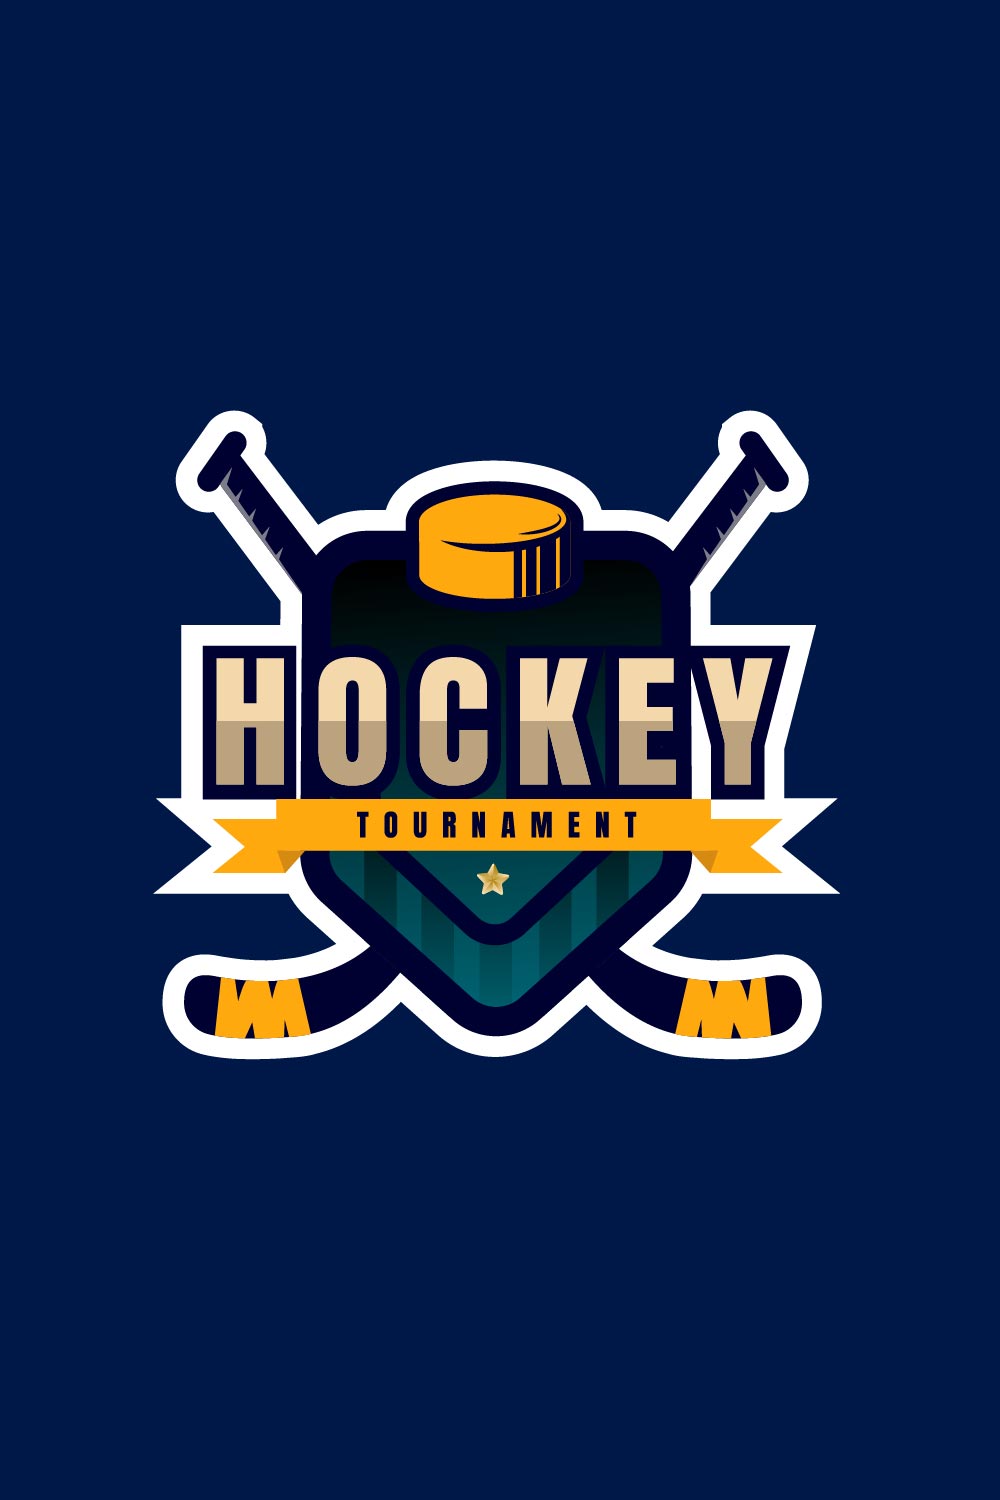 Ice Hockey Club Logo, Badge Design pinterest image.